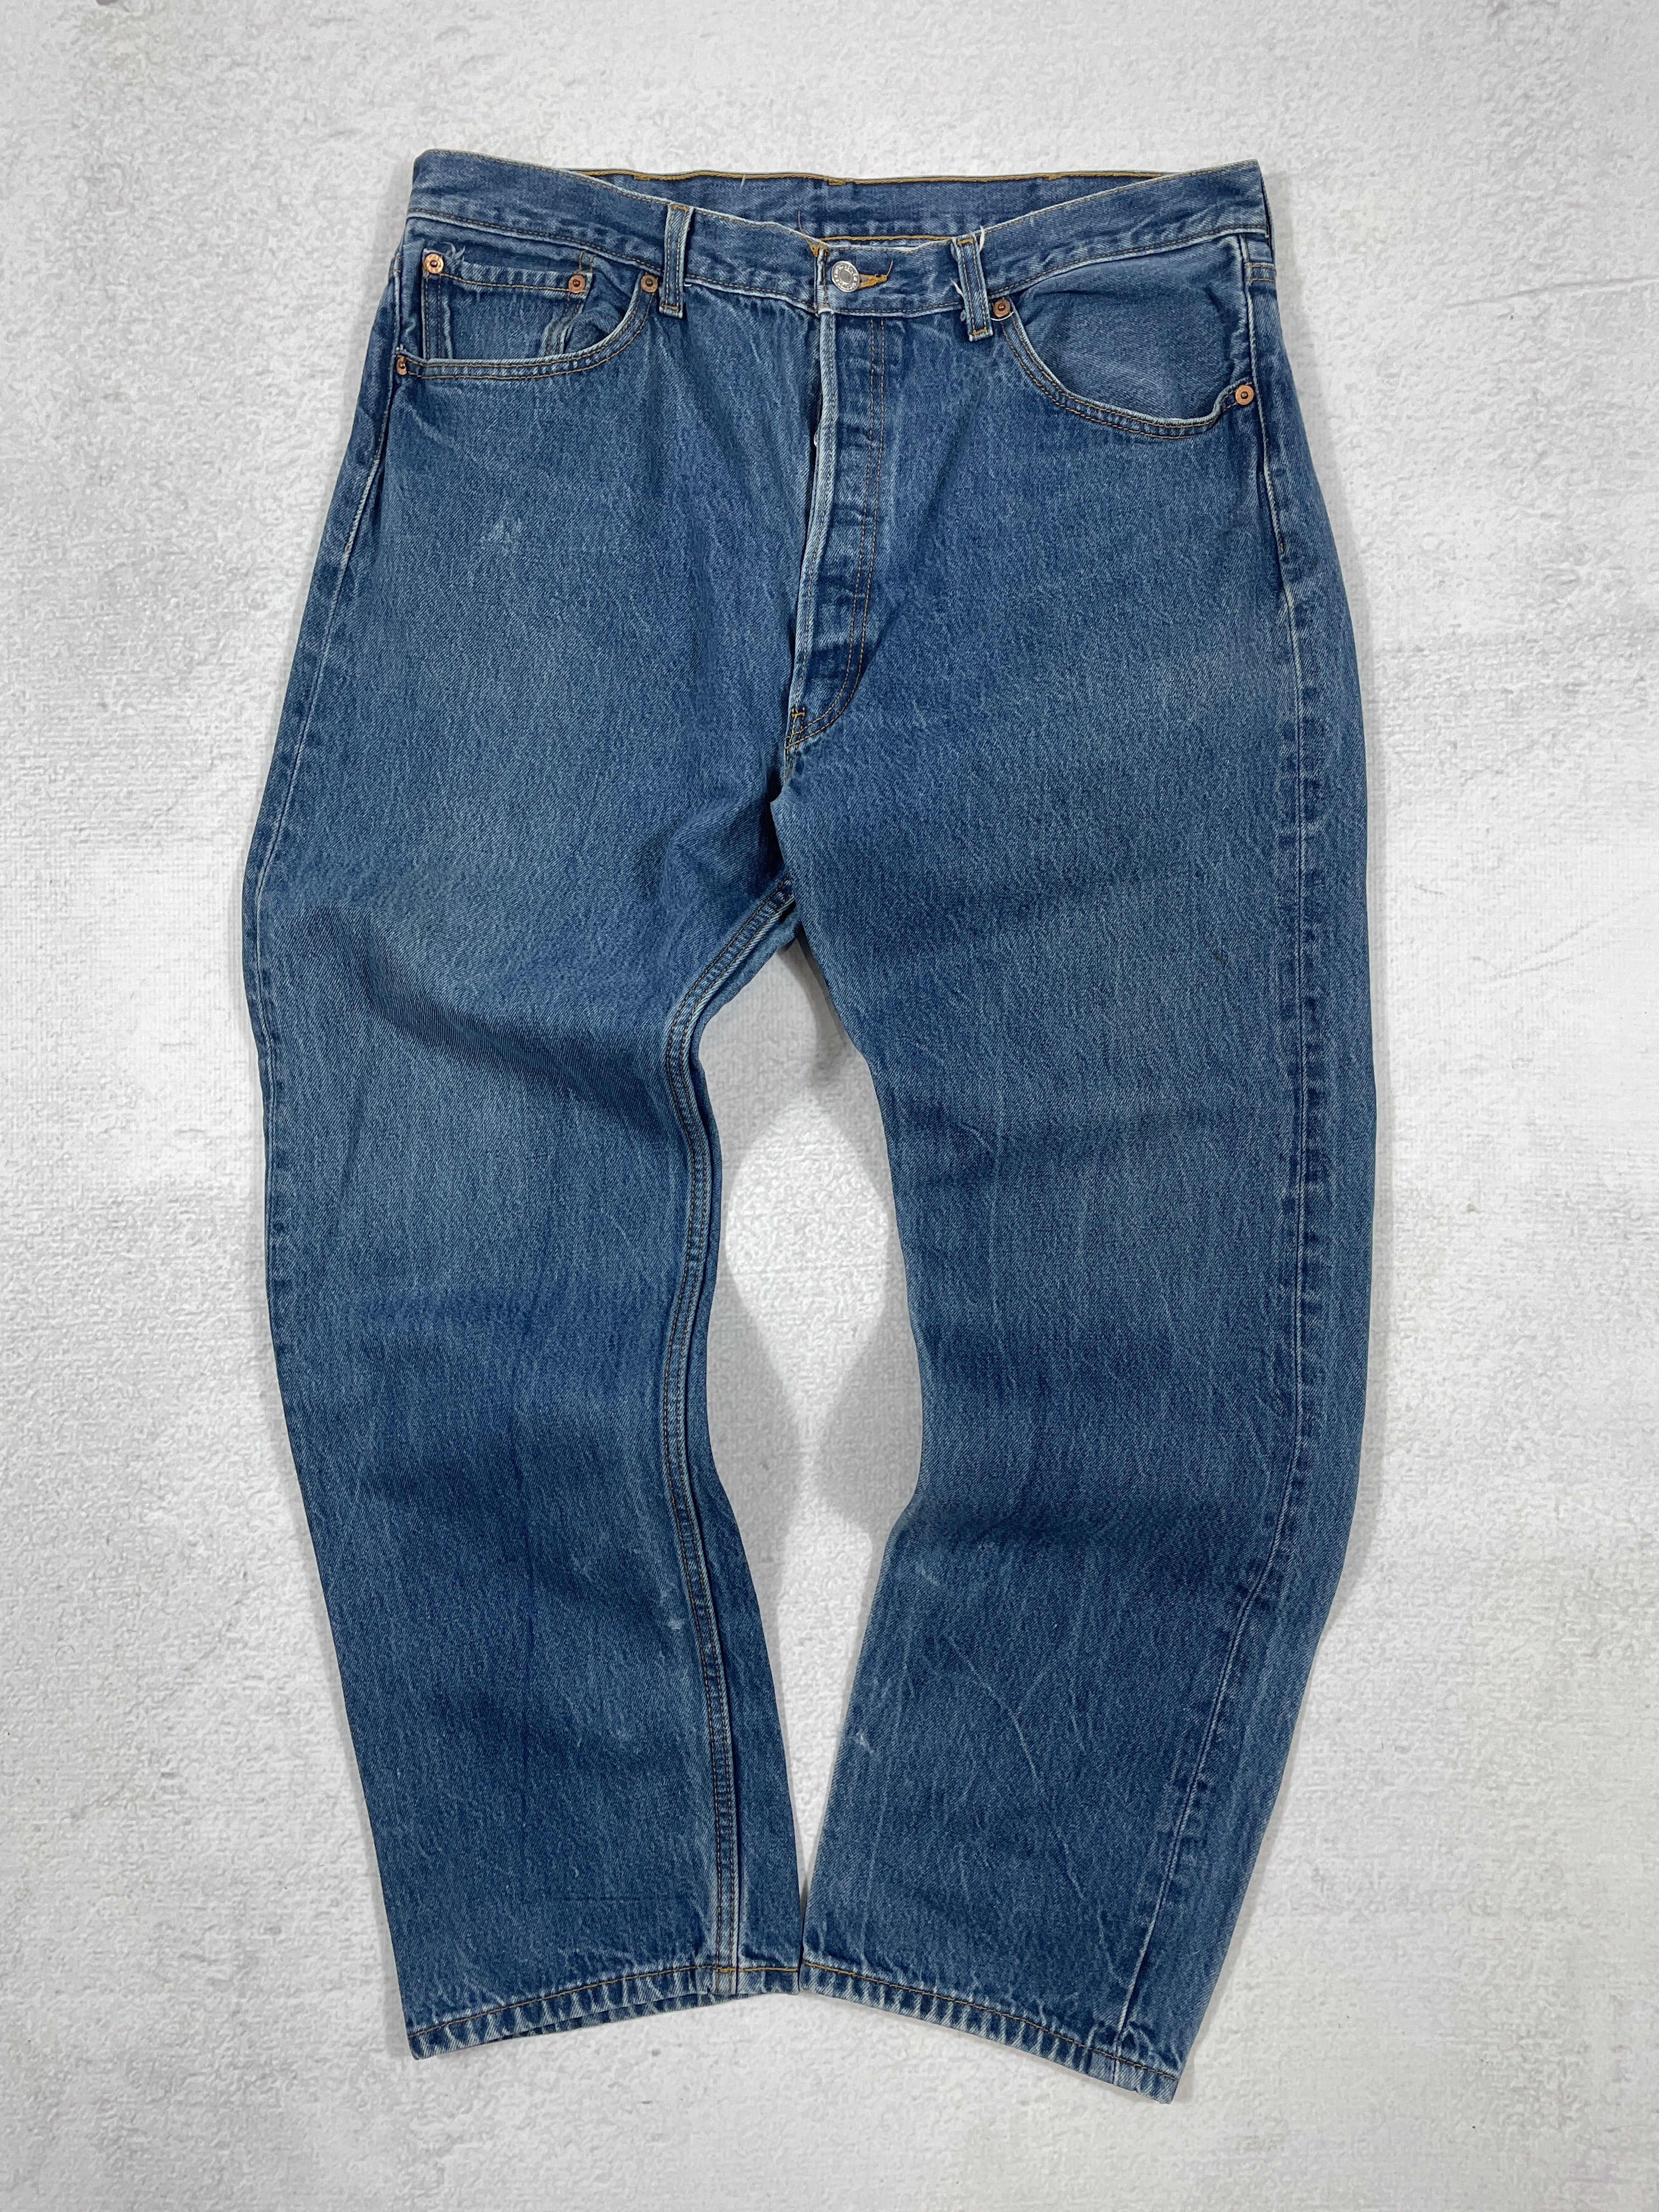 Vintage Levis 501 Jeans - Men's 40Wx34L